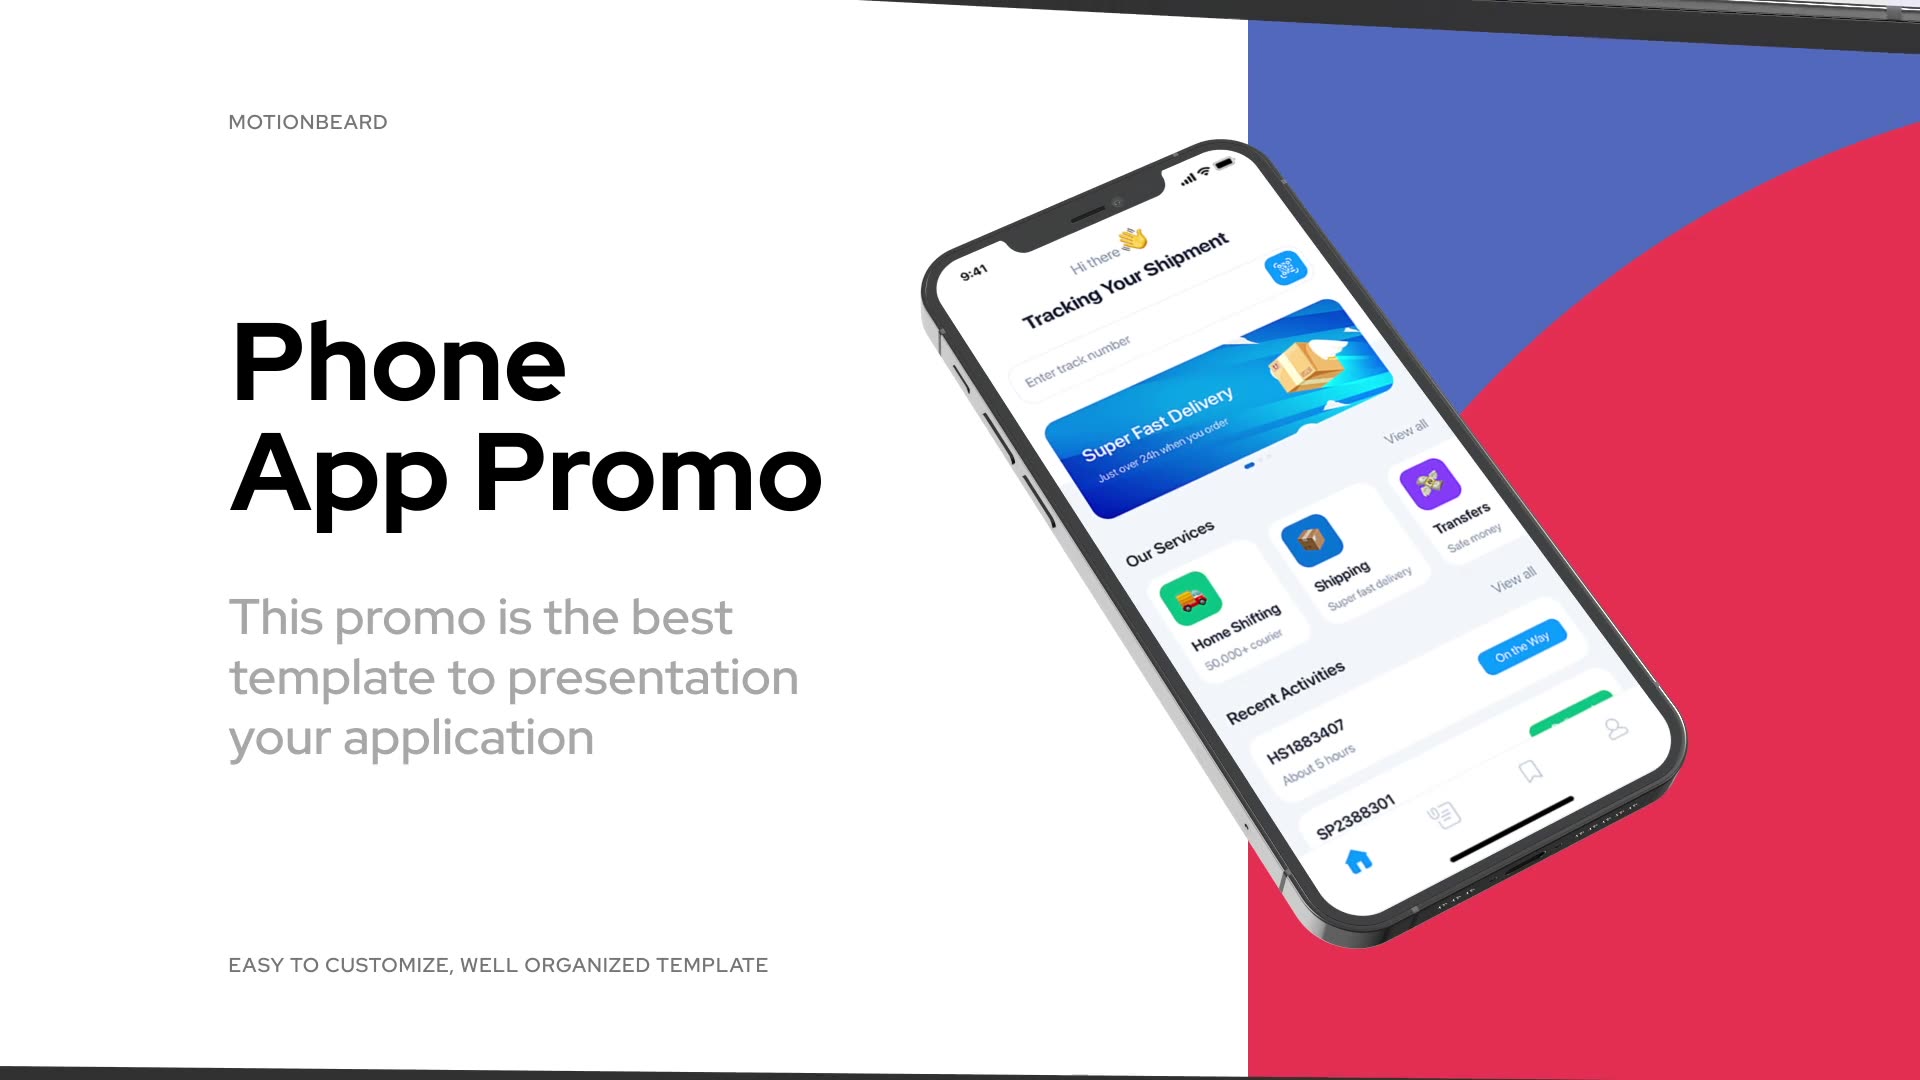 Phone App Promo for Premiere Pro Videohive 33994120 Premiere Pro Image 3